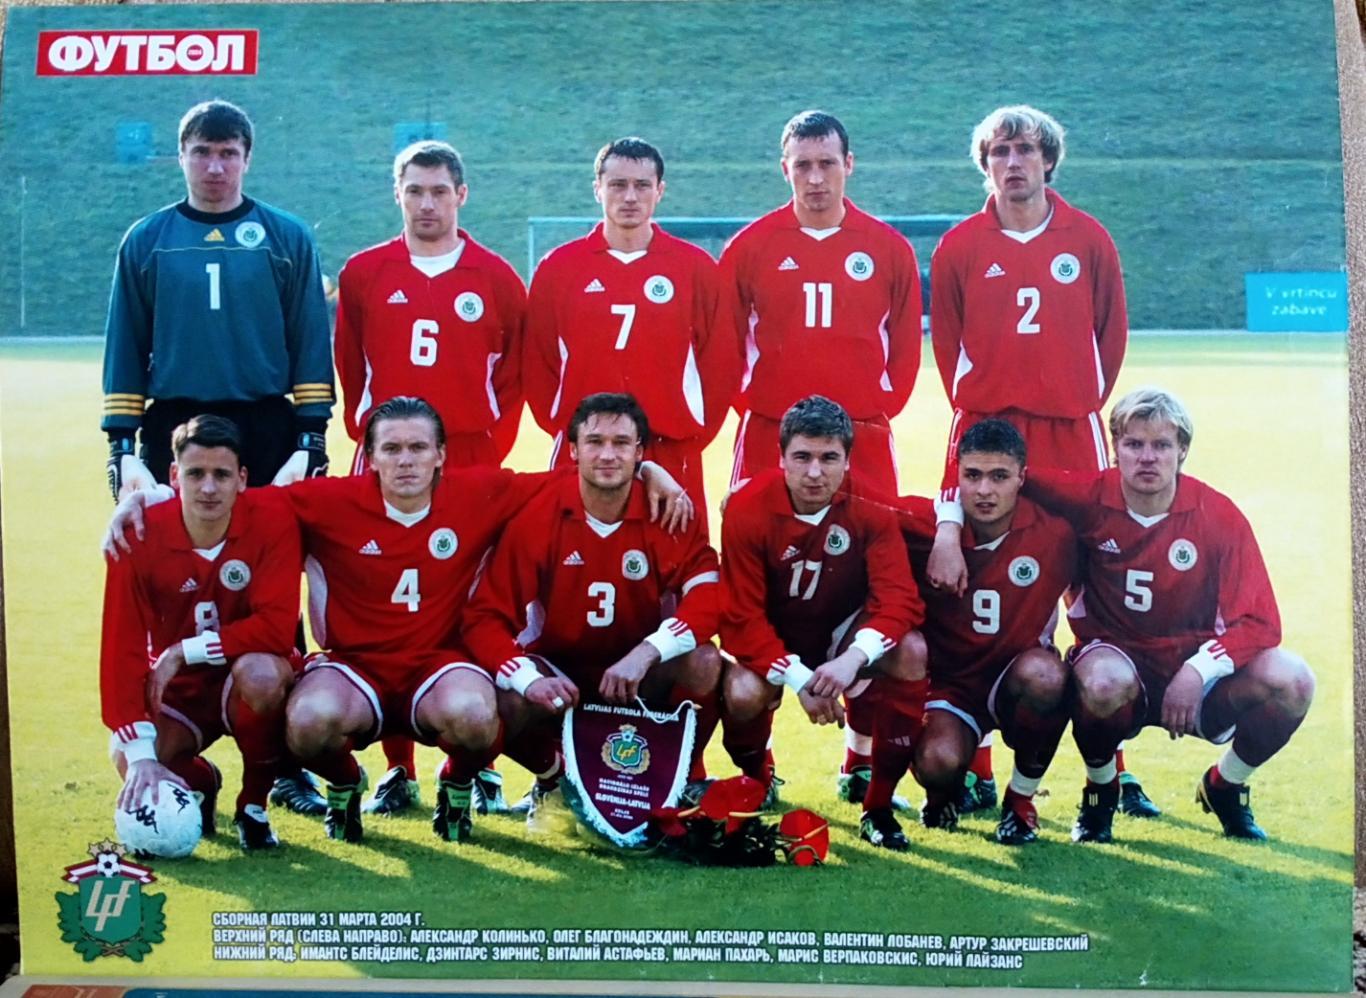 Журнал. Футбол. Спецвидання.N 8/2004. Постери Іспанія, Латвія. 2